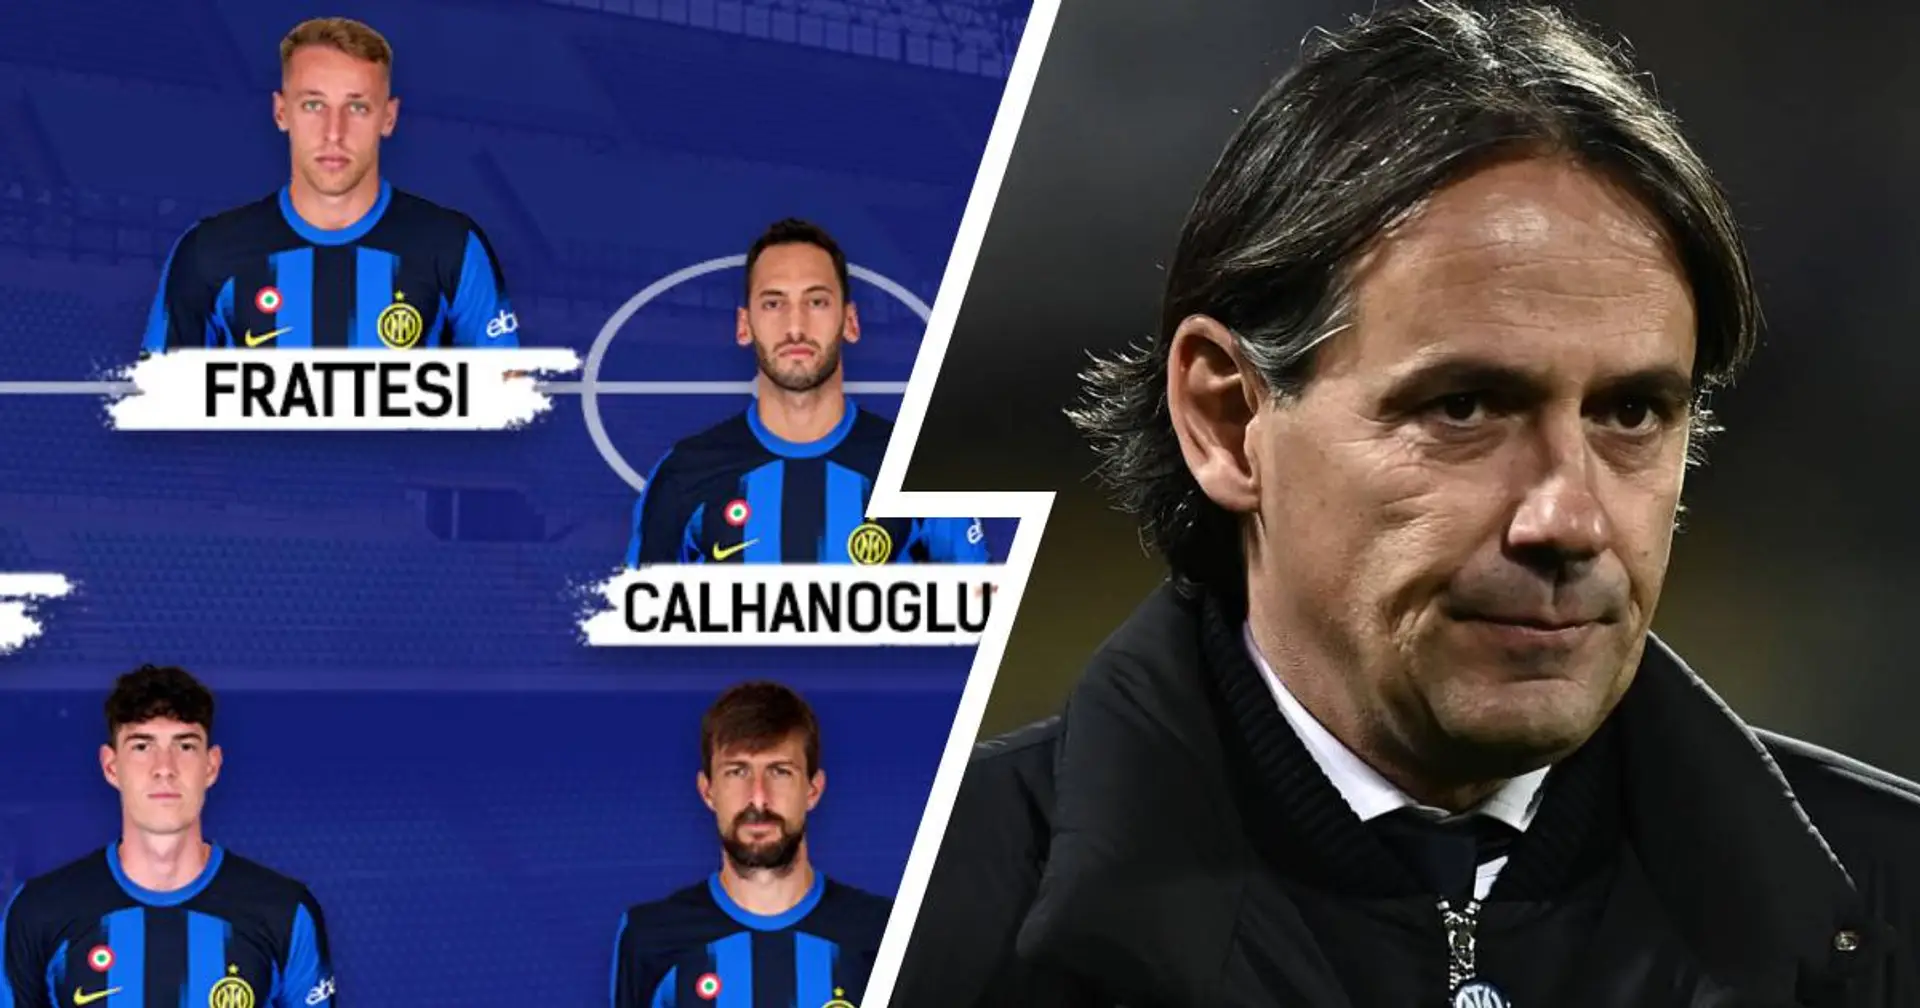 Inzaghi fa riposare un big nerazzurro: Inter vs Napoli, probabili formazioni e ultime notizie